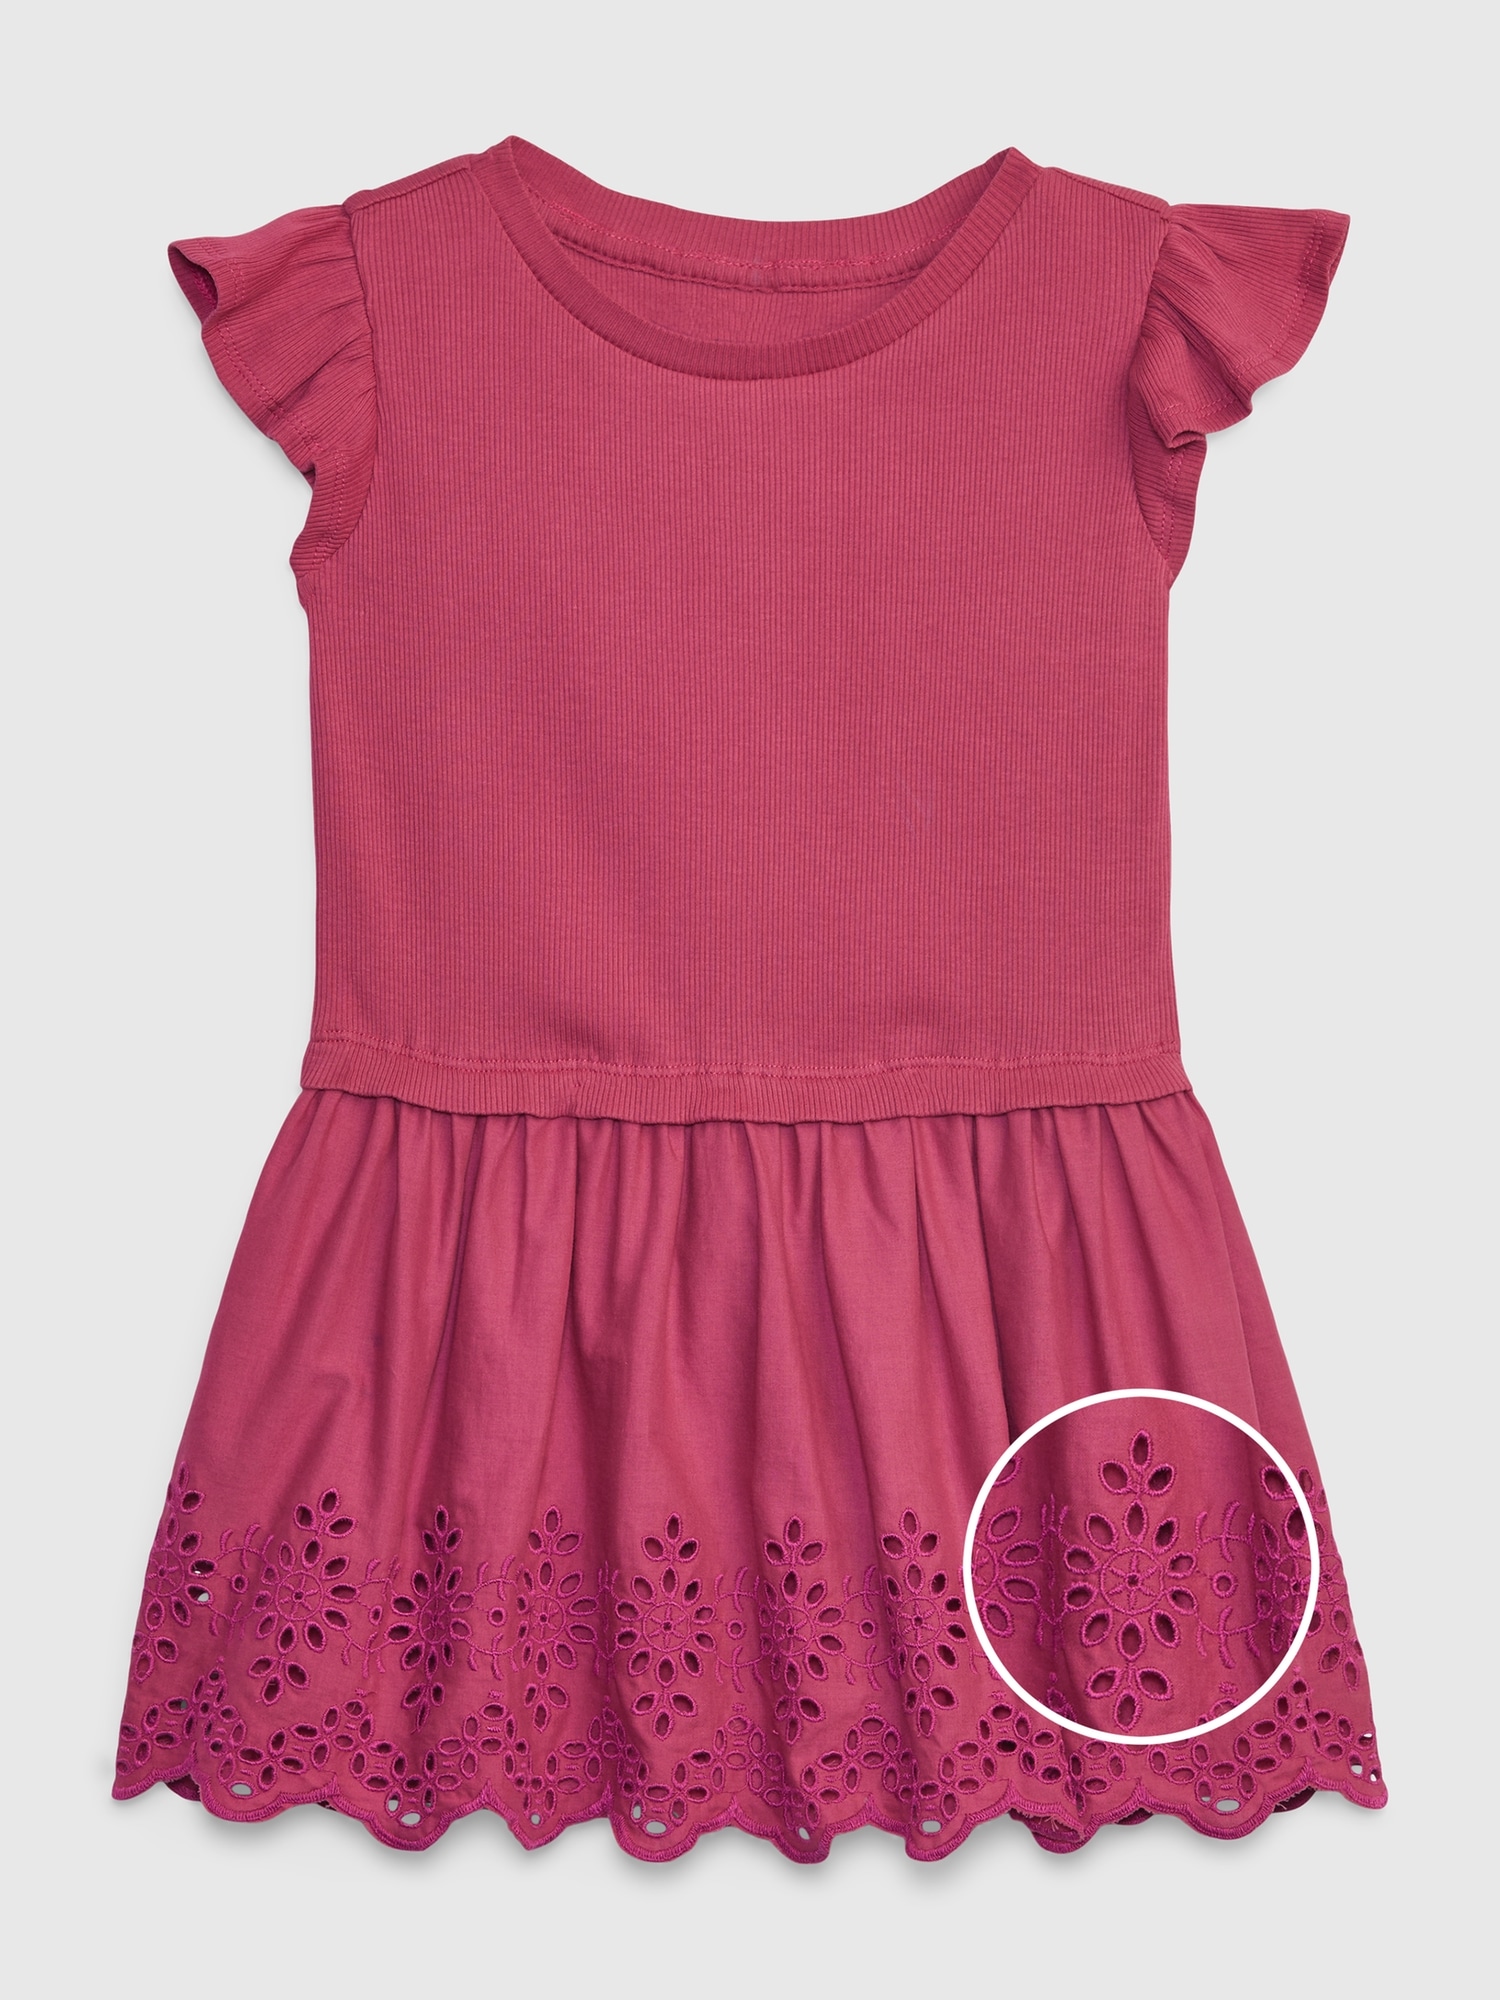 Gap Toddler Eyelet Dress pink. 1